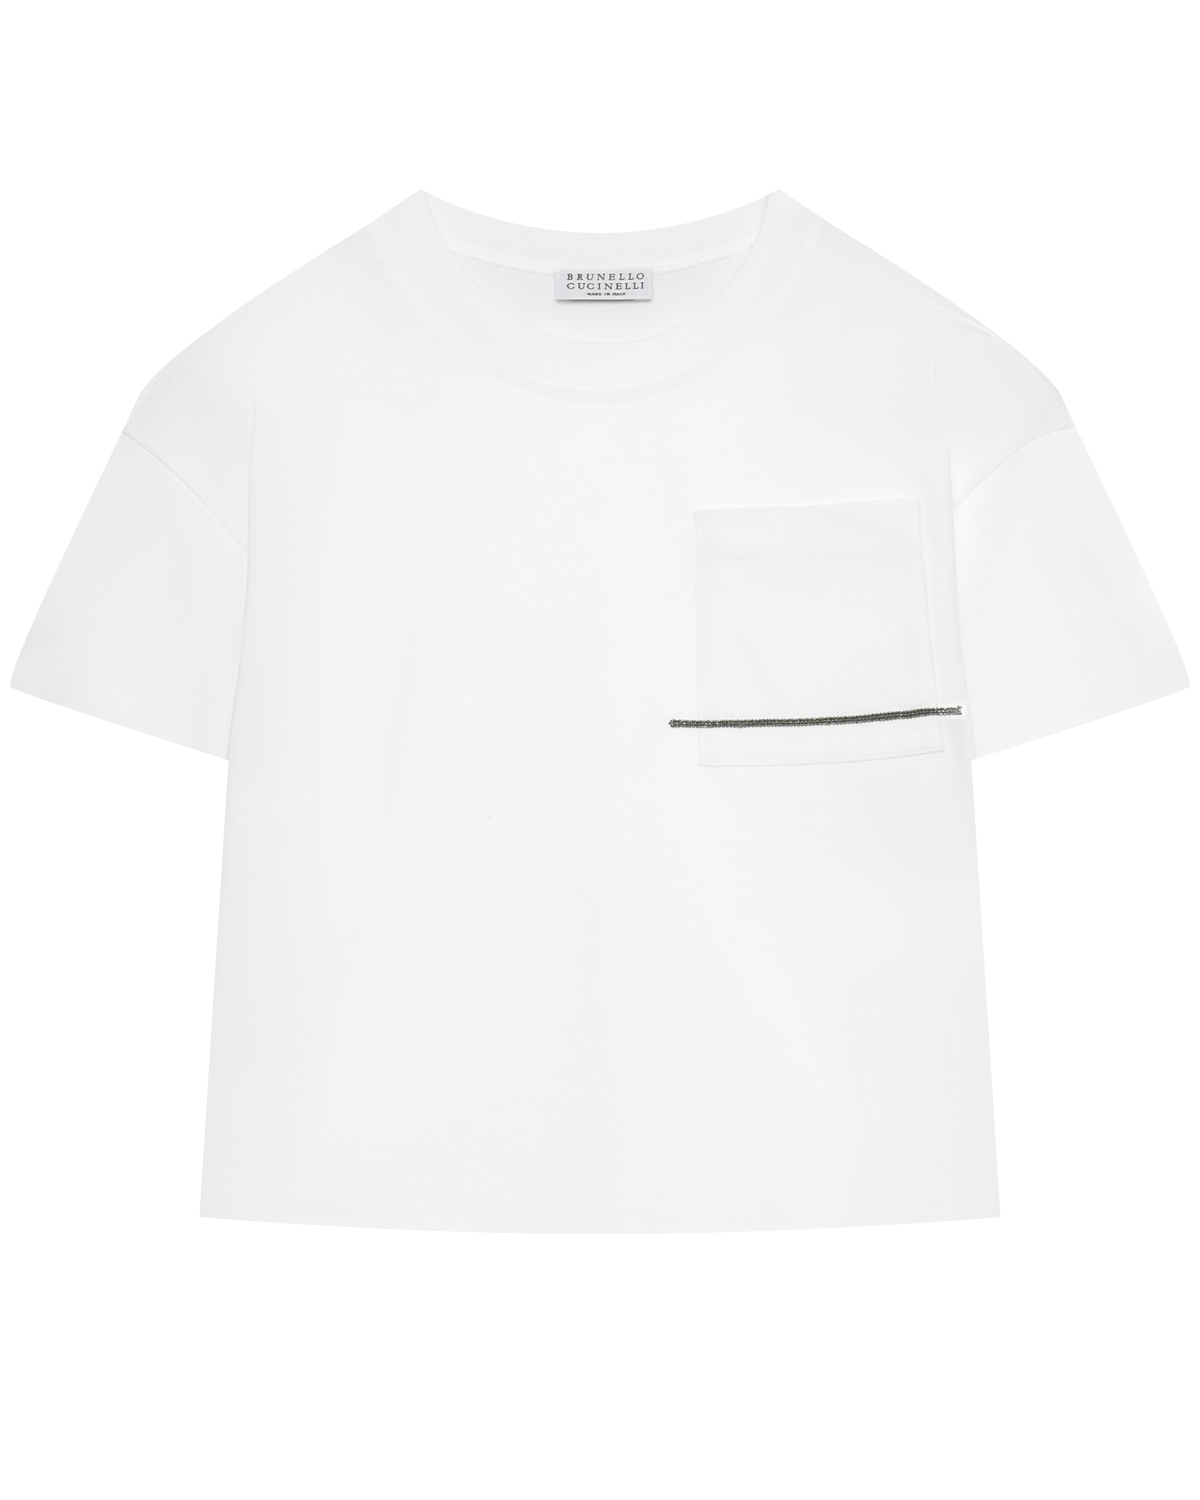 Футболка со стразами на кармане, белая Brunello Cucinelli белая футболка с накладным карманом brunello cucinelli